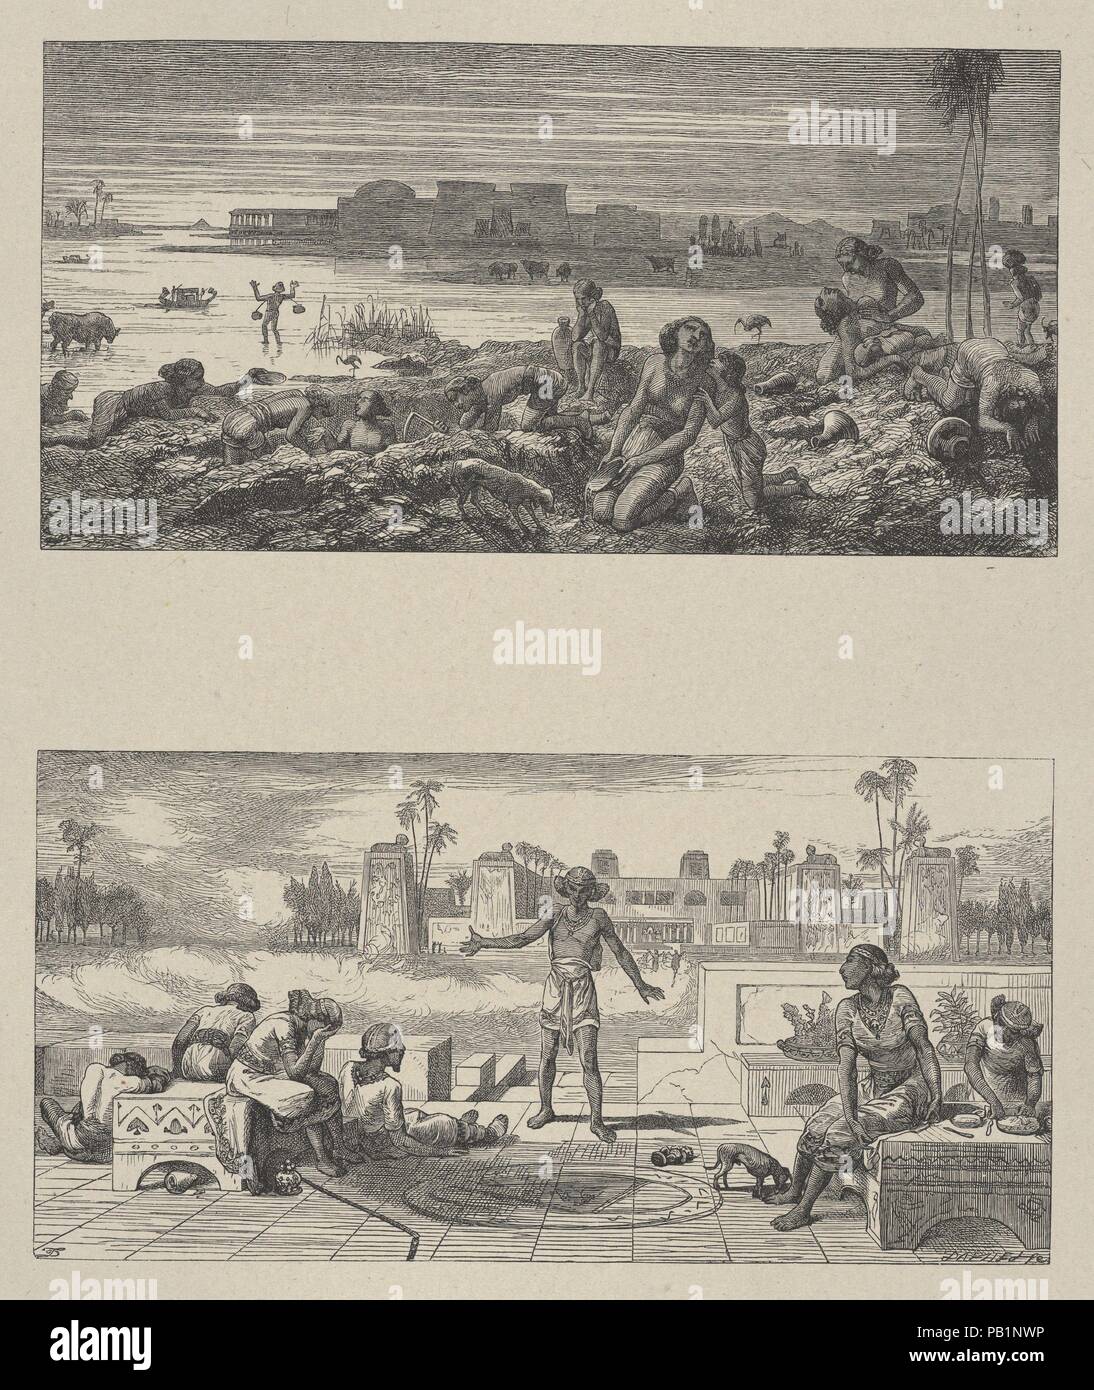 Das Wasser drehte in Blood-The kocht und Blanes (Dalziels "Bibel Galerie). Artist: Thomas Dalziel (Briten, Altdorf, Northumberland 1823-1906 Herne Bay, Kent). Abmessungen: Bild: 3 7/16 x 6 15/16 in. (8,8 × 17,6 cm) Bild: 3 7/16 x 6 15/16 in. (8,8 × 17,6 cm) Indien: 10 1/2 in. X 9 in. (26,7 × 22,8 cm) Berg: 16 cm. × 12 15/16 in. (41,6 × 32,9 cm). Engraver: Dalziel Brüder (British, 1839-1893) aktiv. Drucker: Camden Drücken Sie (Briten, London). Verlag: Scribner und Welford (New York, NY). Datum: 1865-81. Museum: Metropolitan Museum of Art, New York, USA. Stockfoto